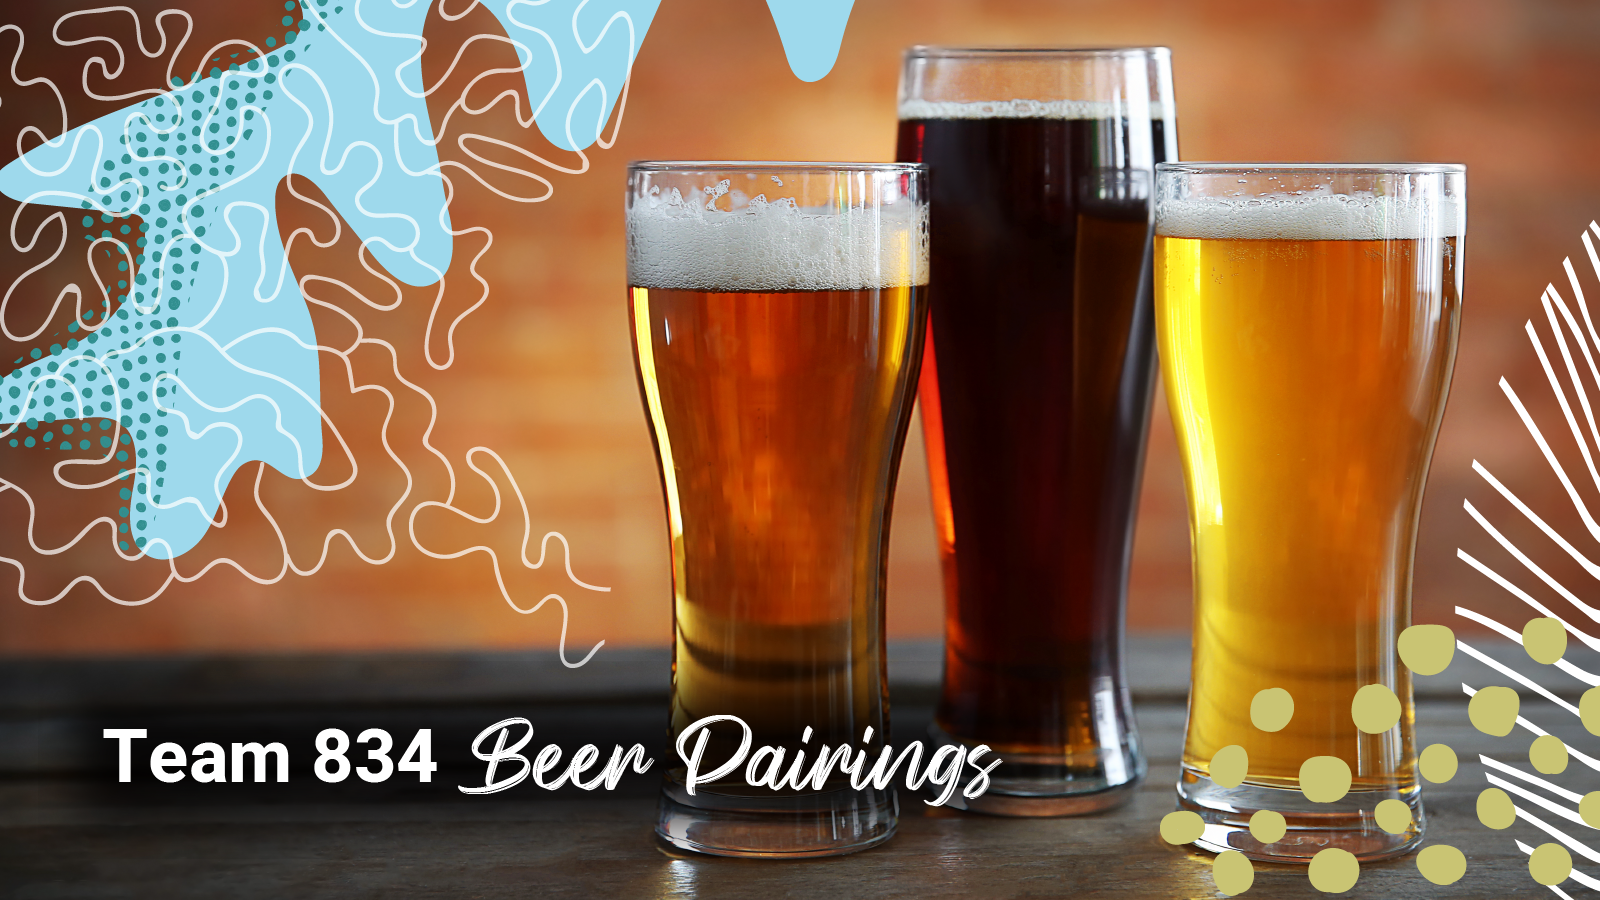 Three beers in pilsner glasses sit a top a wooden bar "Team 834 Beer Pairings"